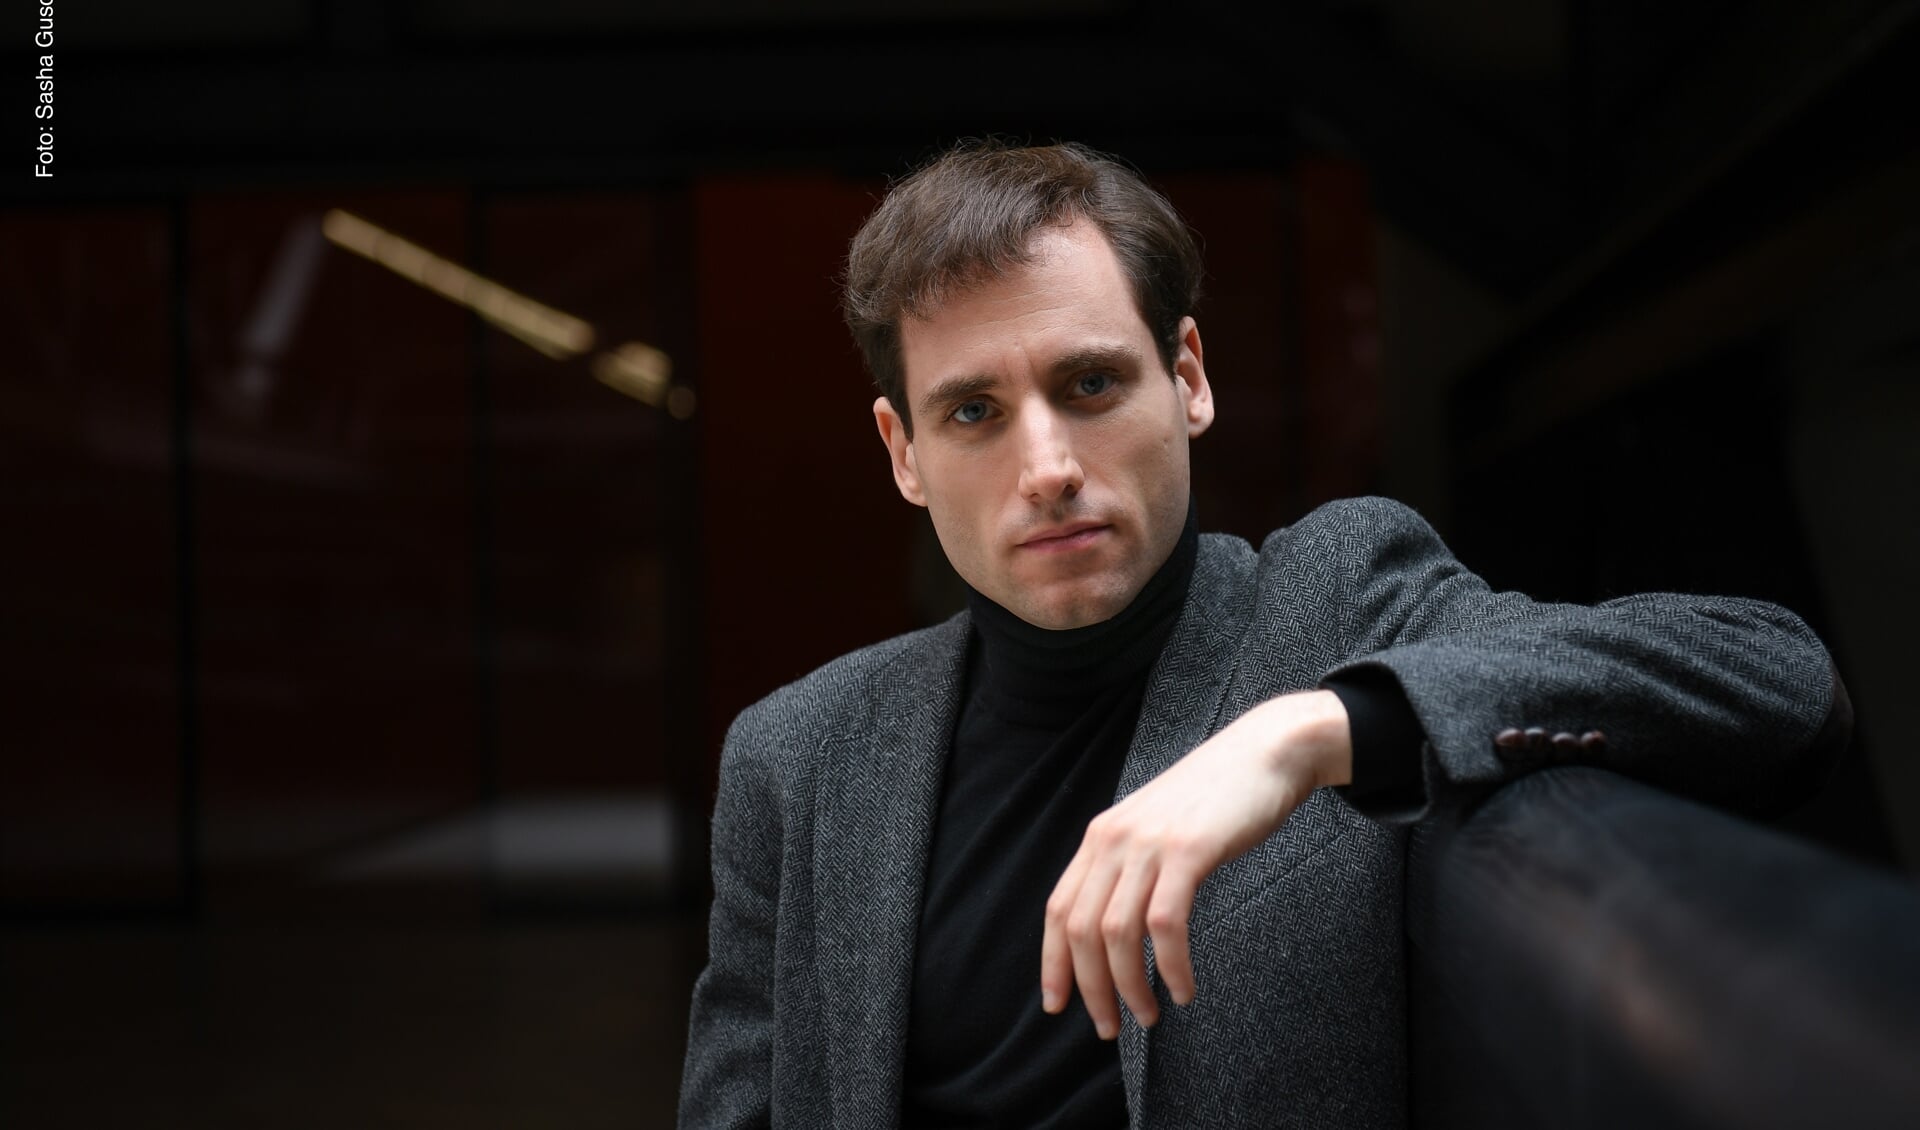 Meesterpianist Boris Giltburg treedt op vrijdag 4 oktober op in de Edesche Concertzaal. 